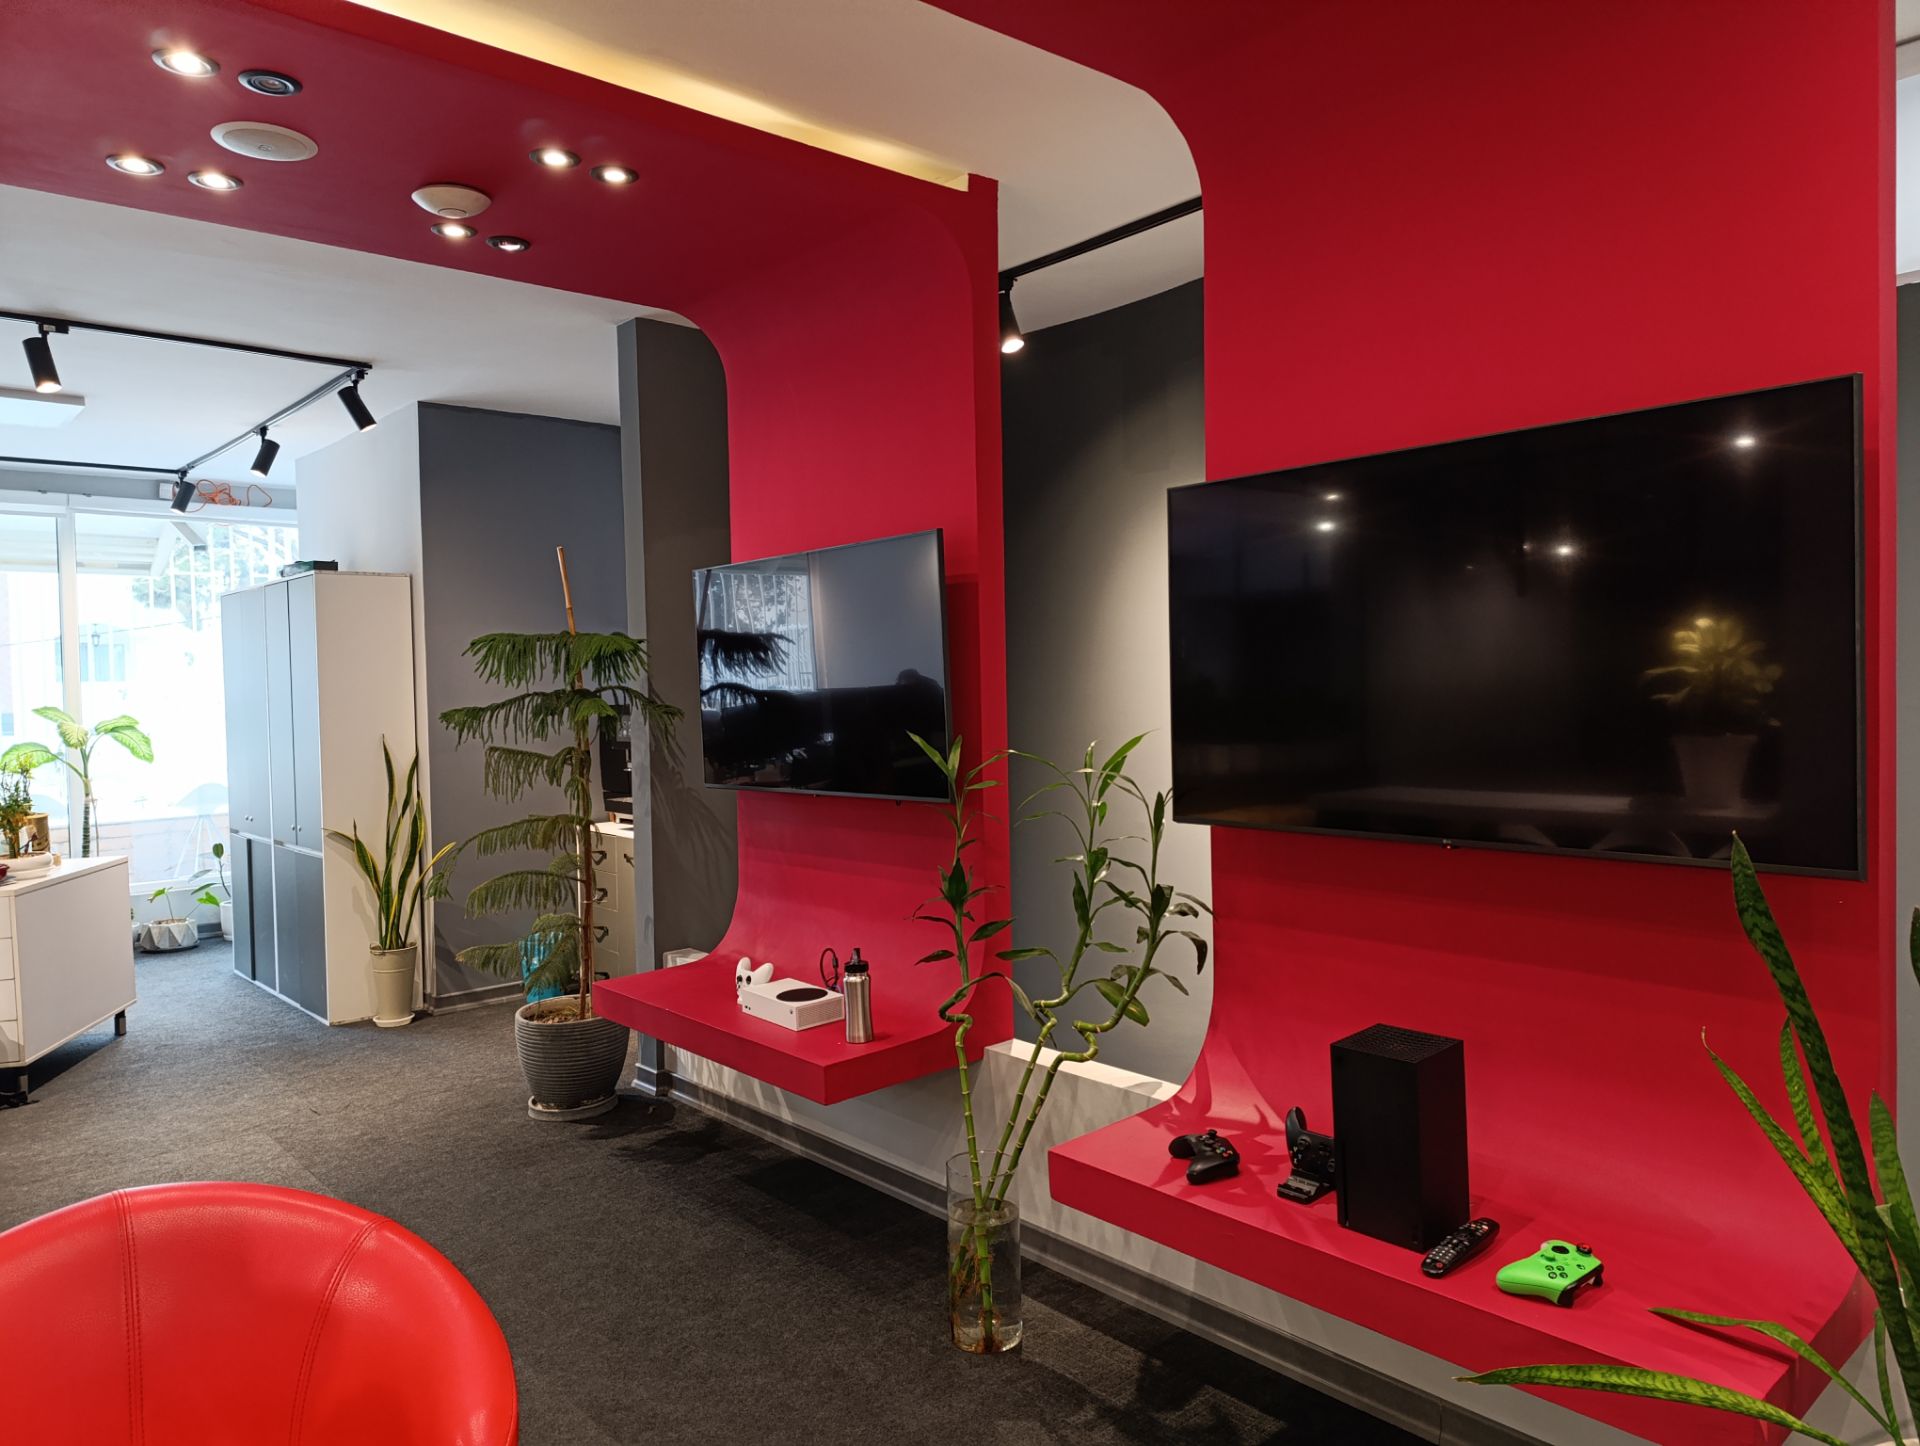 نمونه عکس ردمی نوت ۱۳ پرو 4G از محیط داخلی یک دفتر کار با دیوار قرمز و تلویزیون روی دیوار